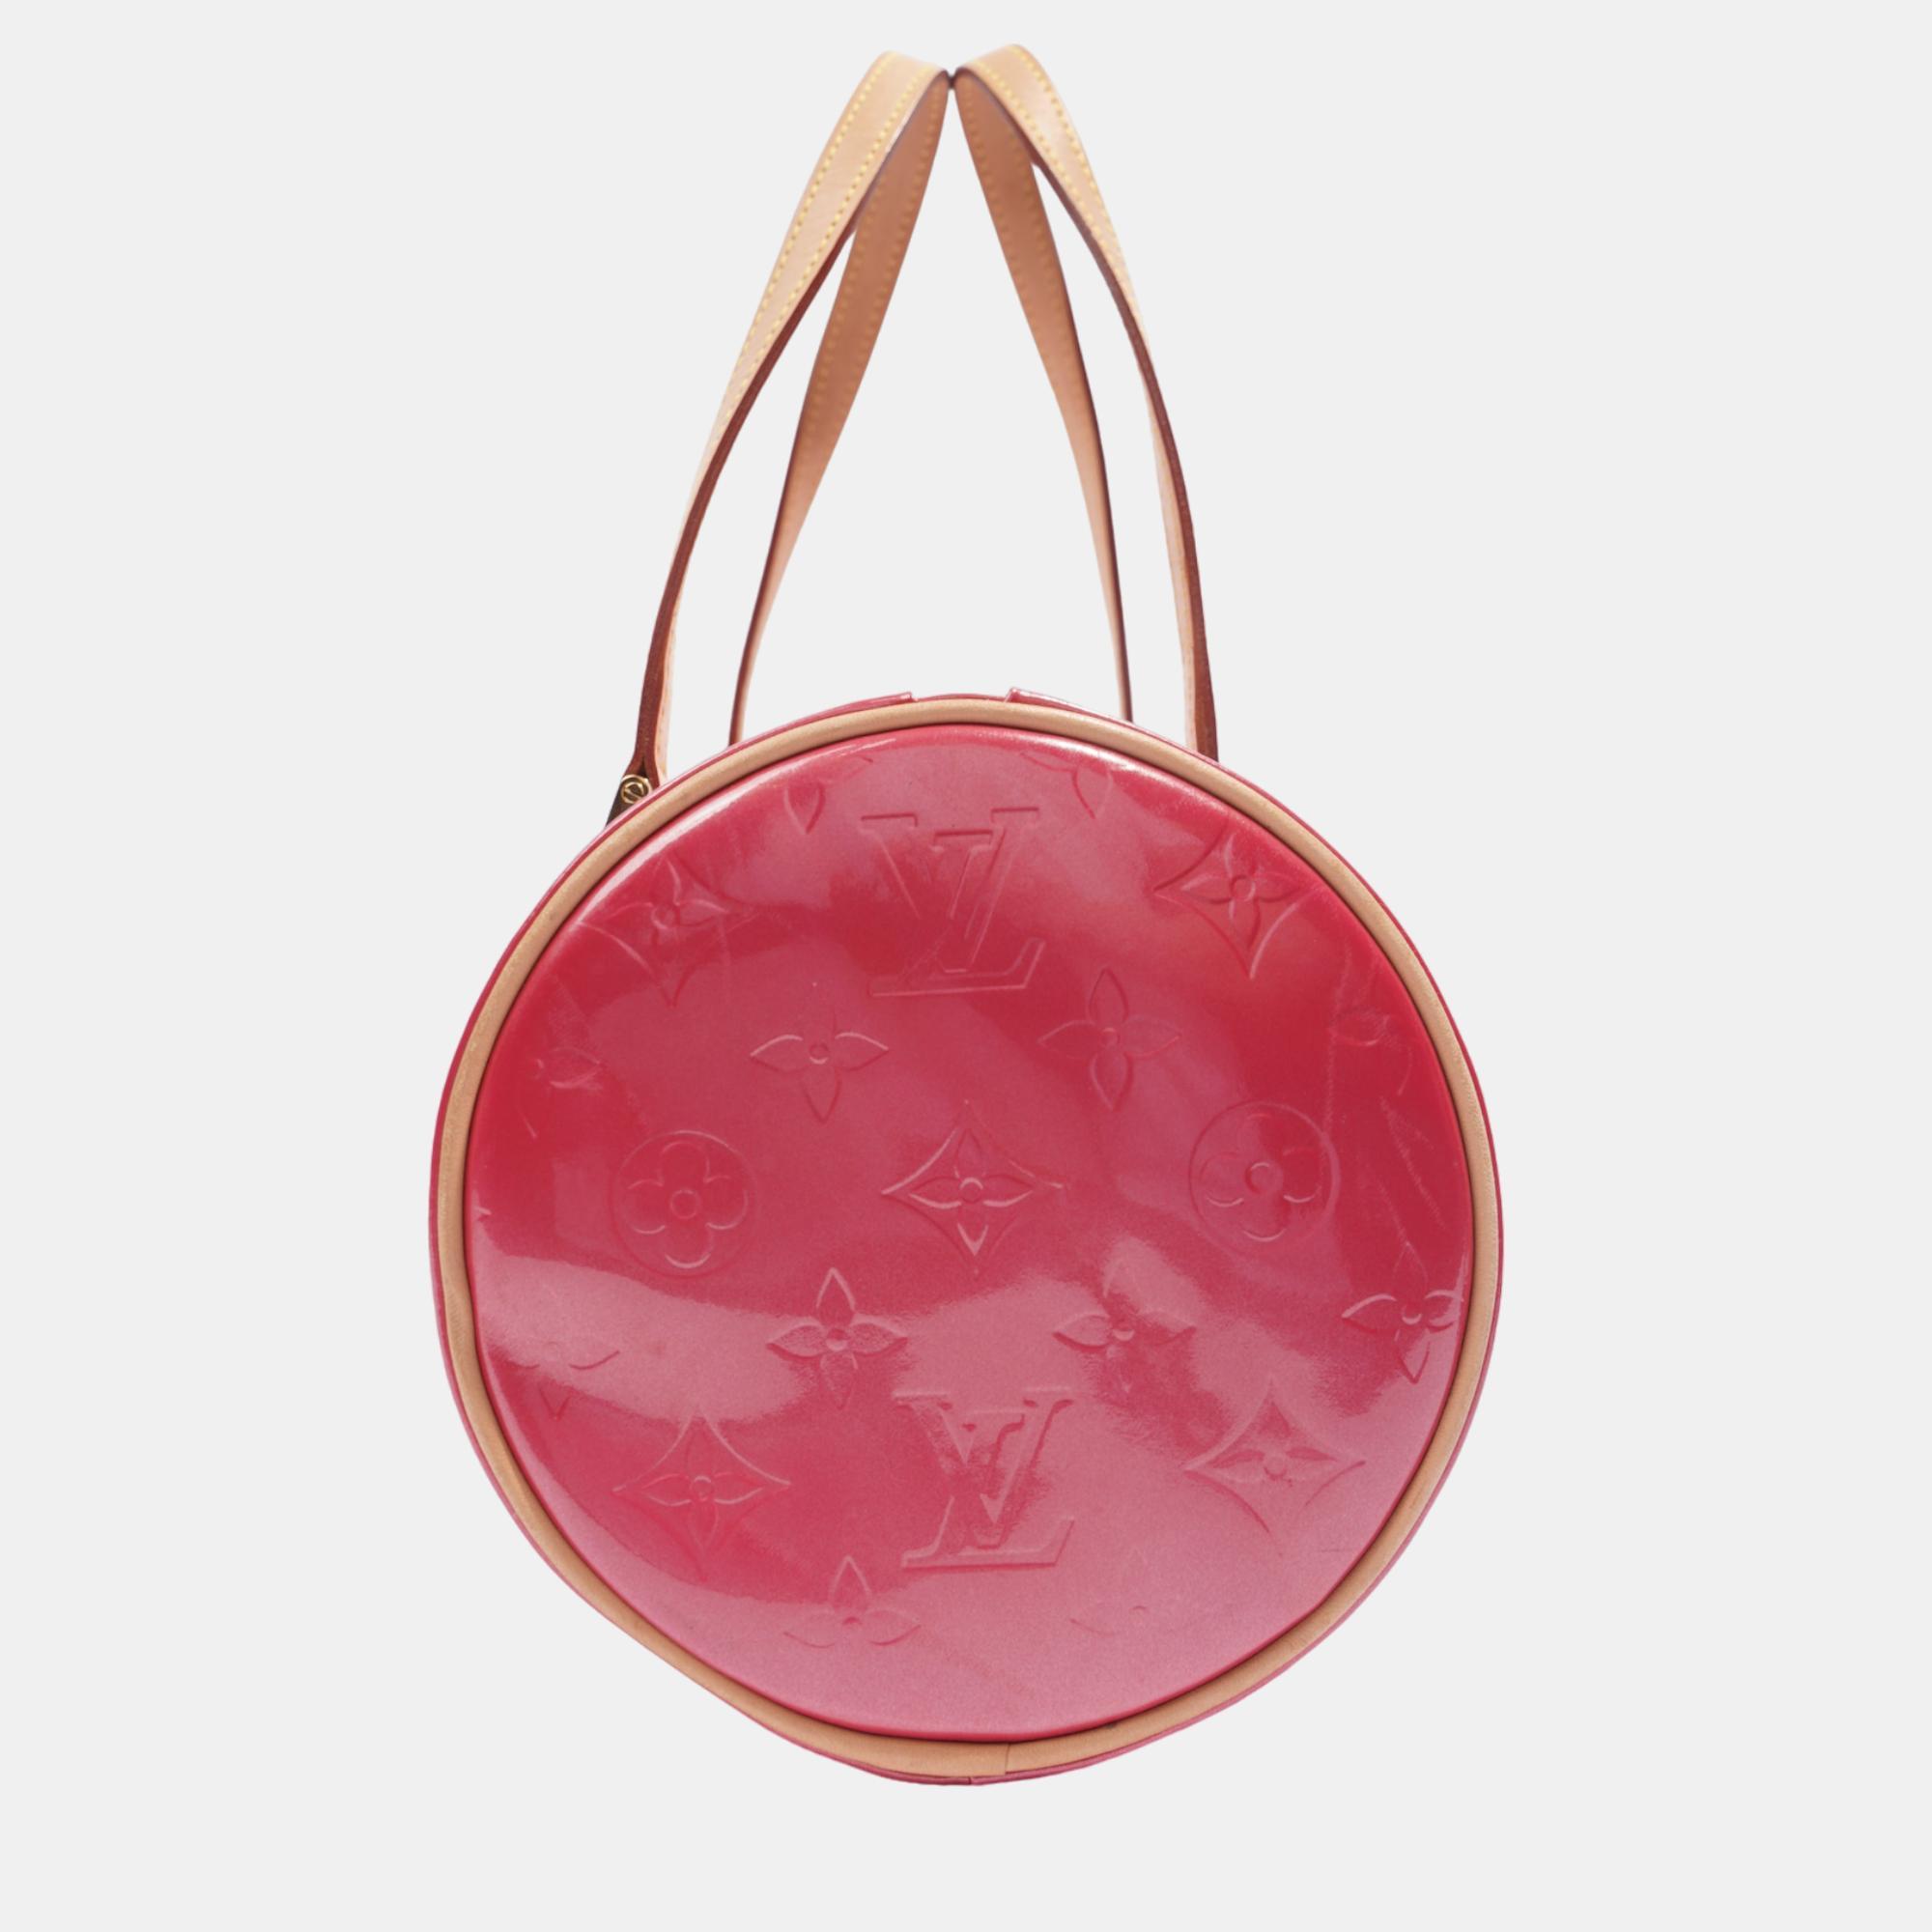 Louis Vuitton Papillon Pink / Beige Vernis Leather 30